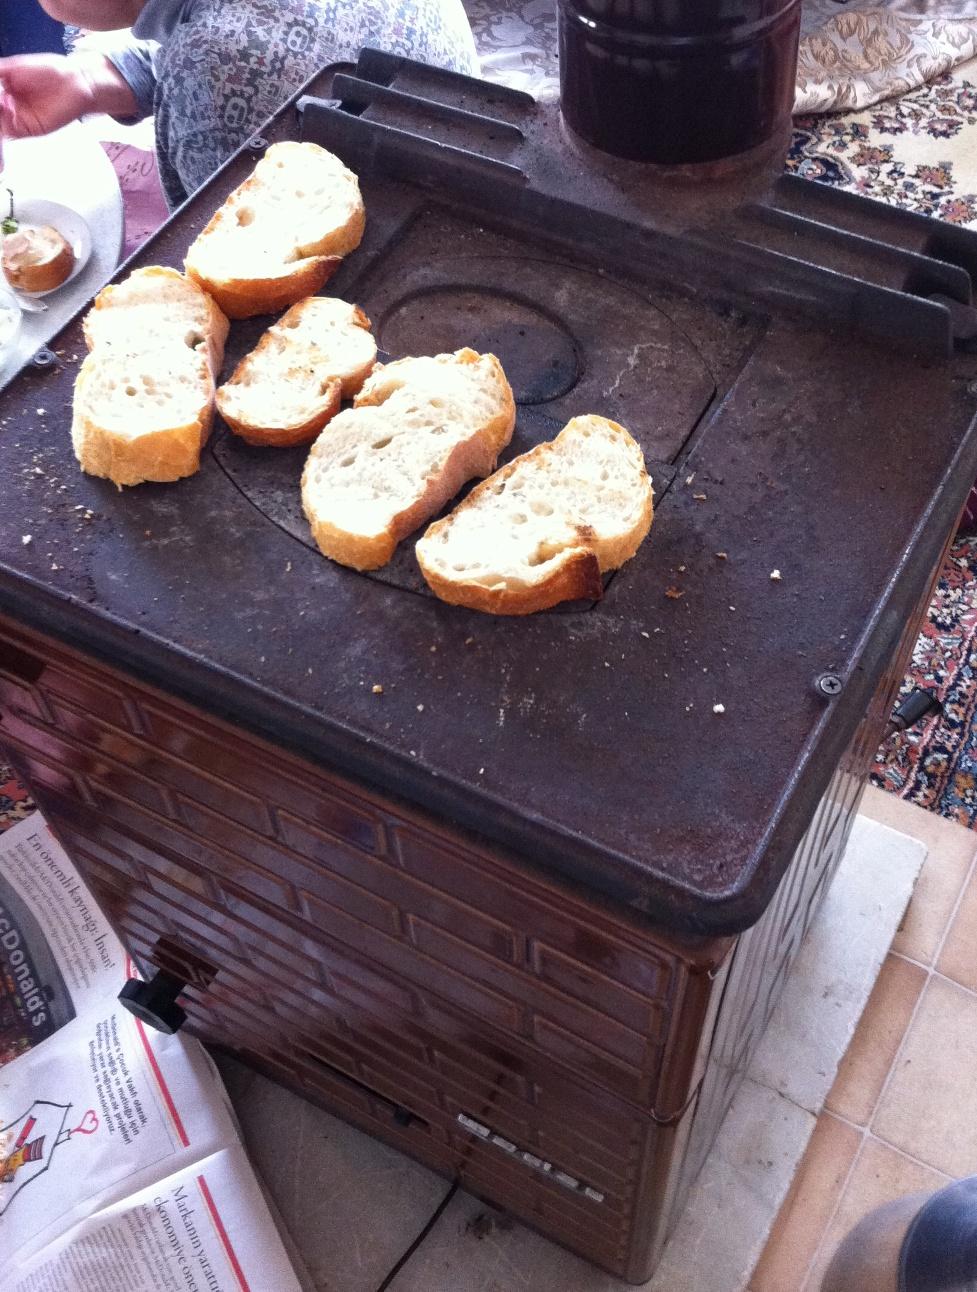 15. Bir yandan kahvaltı yapılırken bir yandan da ekmekler kızarır ve arada unutulunca yanık kokusu ve dumanıyla farkedilir. Anneniz de yanıkları bıçakla sıyırır ve yine de o ekmek yenir.